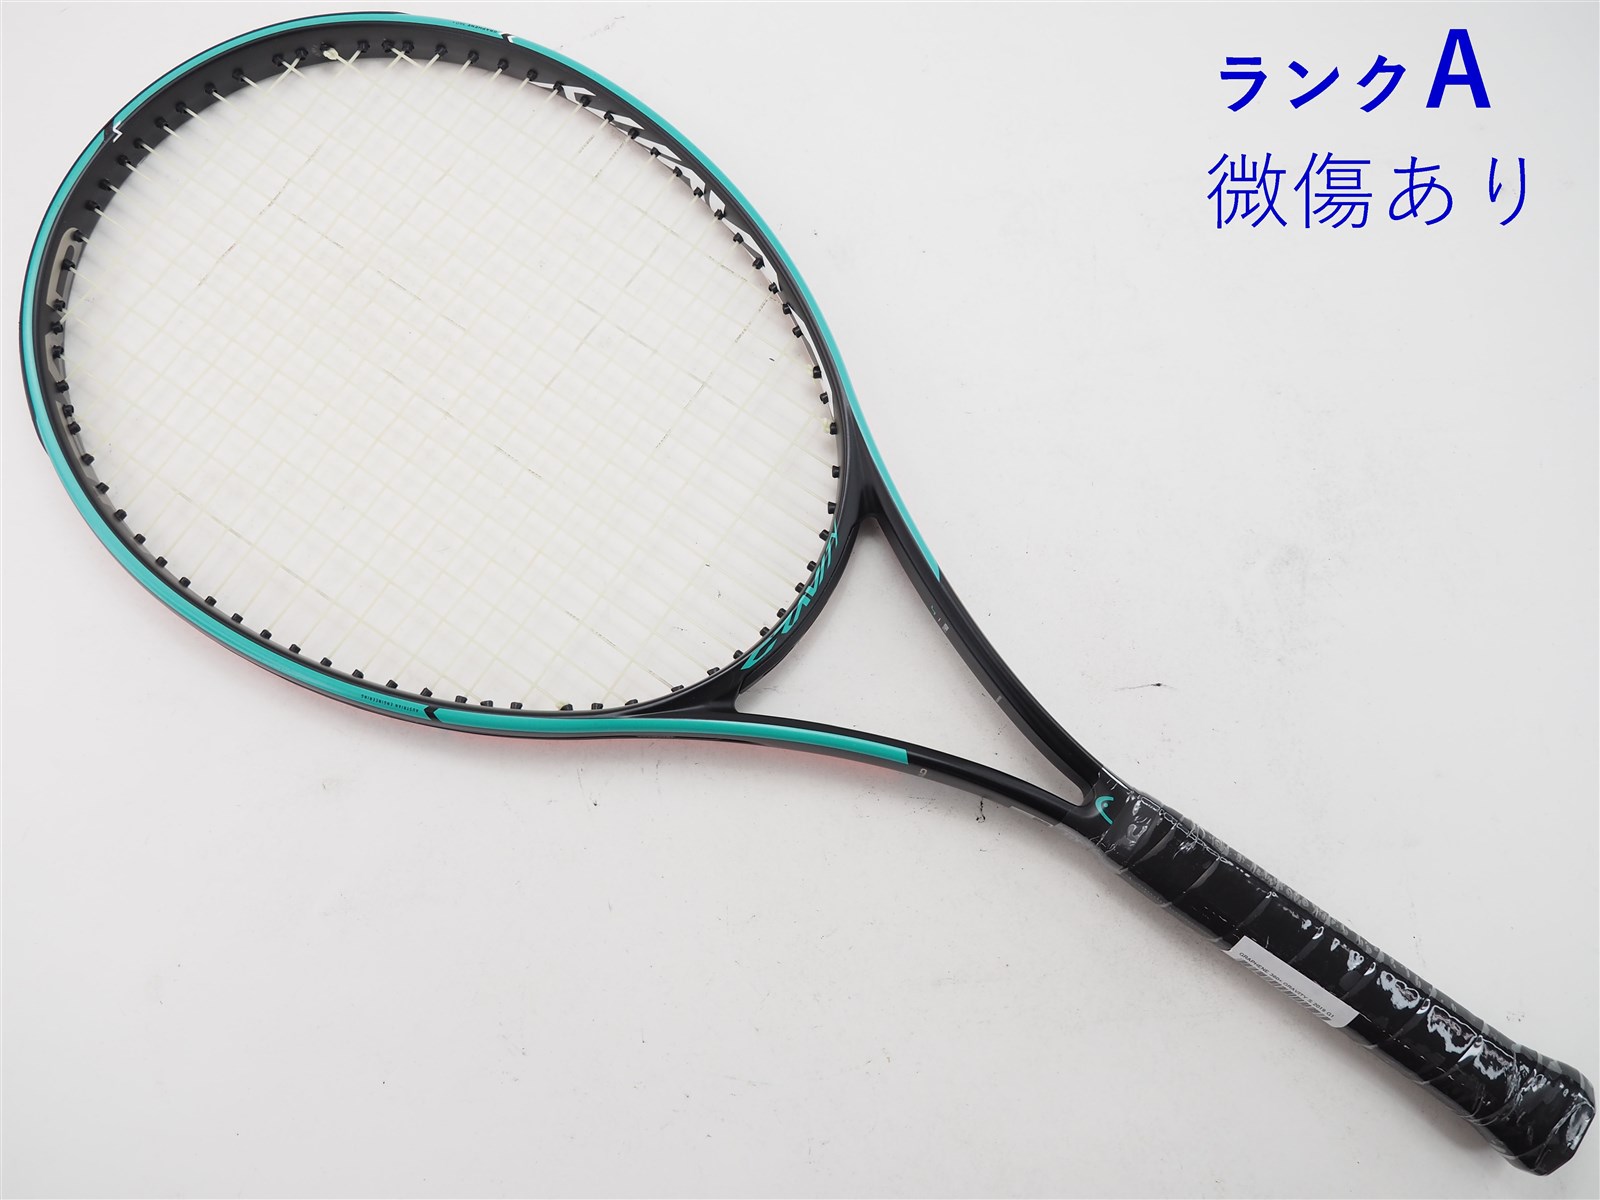 テニスラケット ヘッド グラフィン 360プラス グラビティー エス 2019